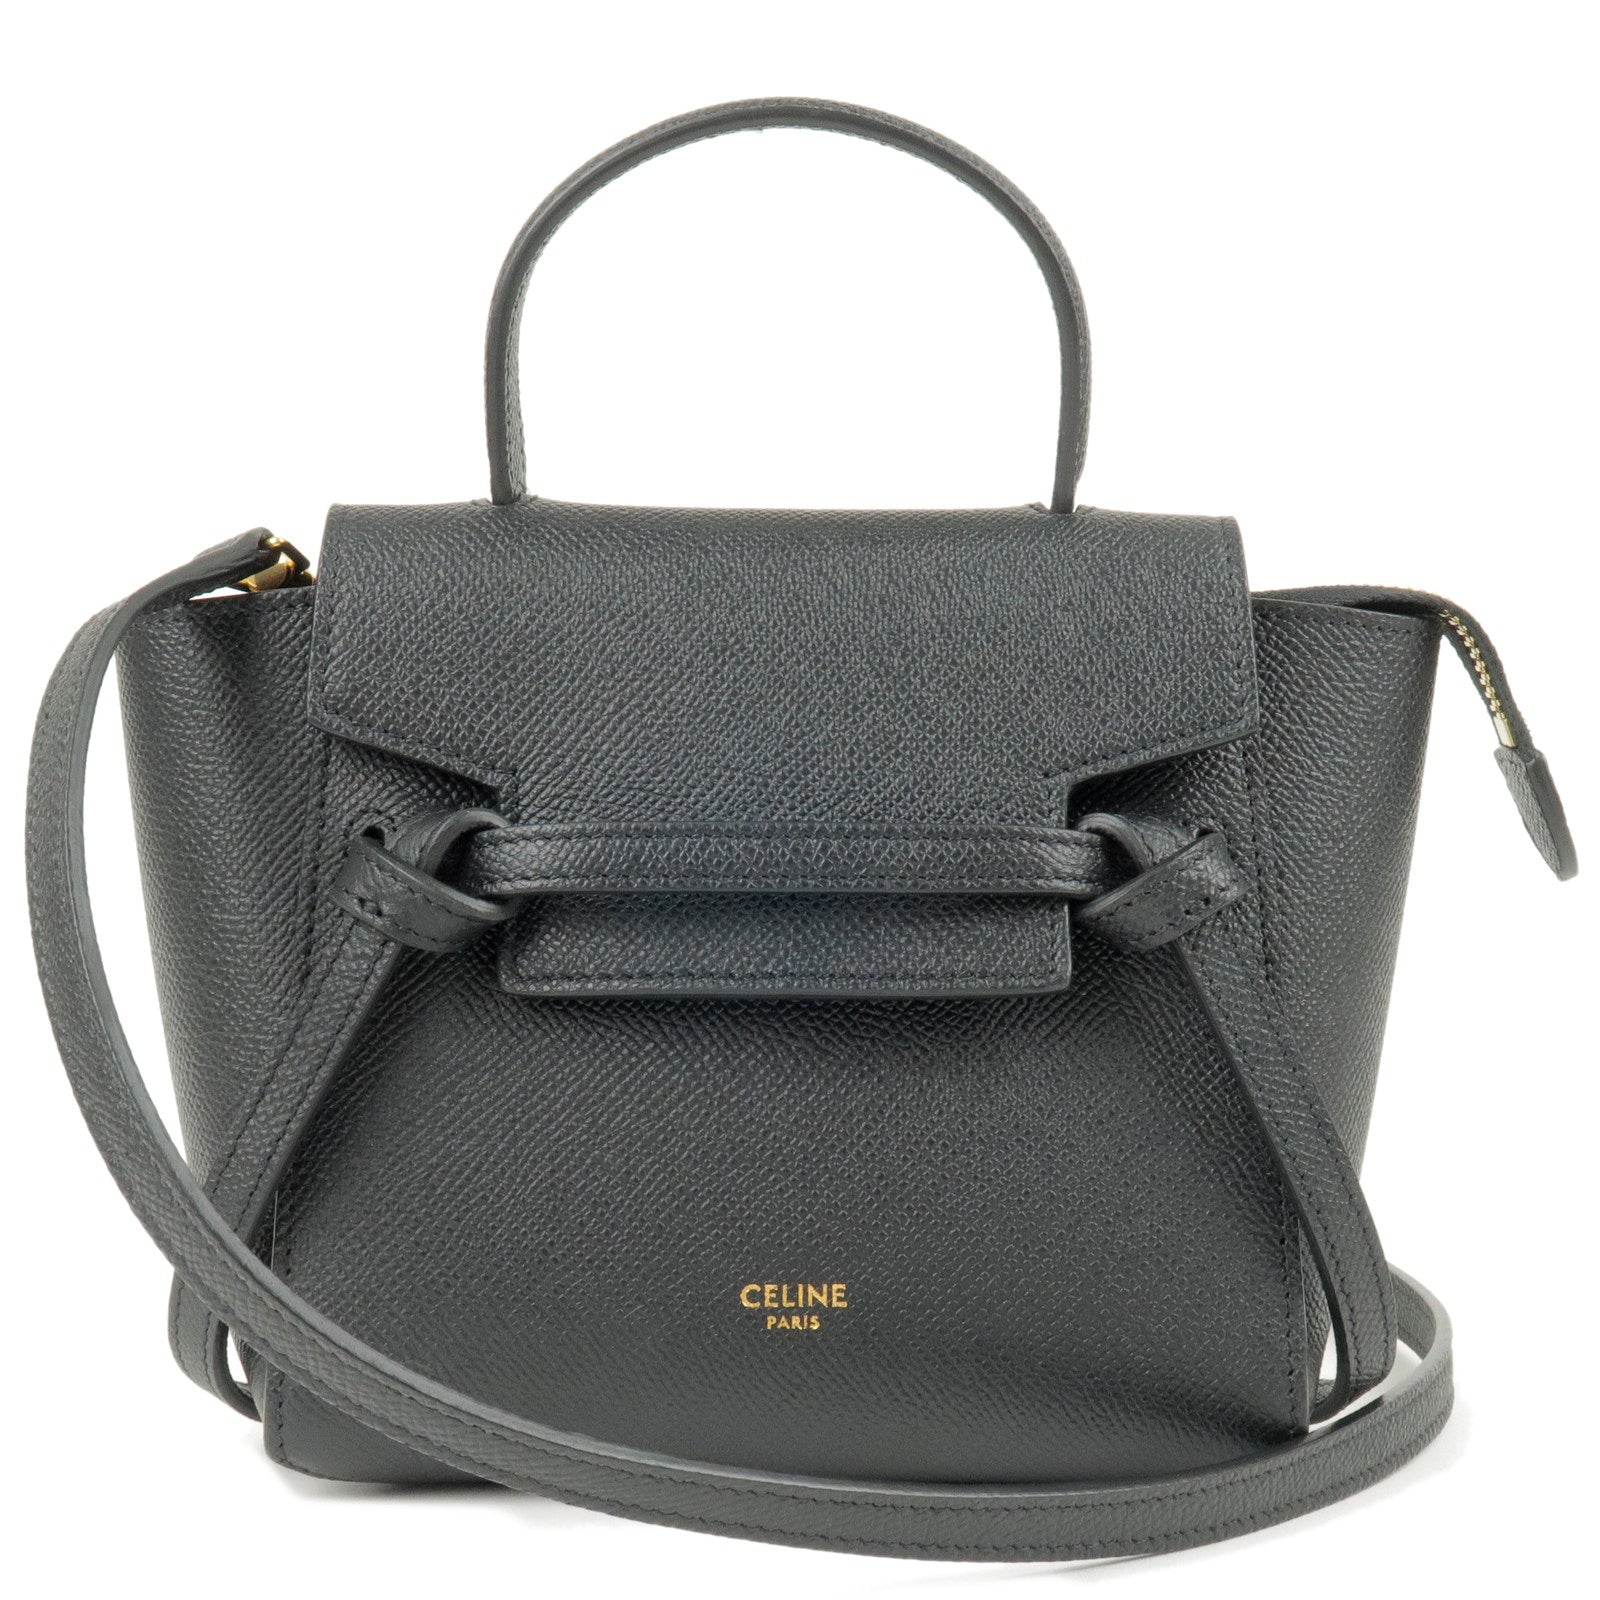 CELINE-Pico-Leather-Belt-Bag-2Way-Bag-Hand-Bag-Black-194263